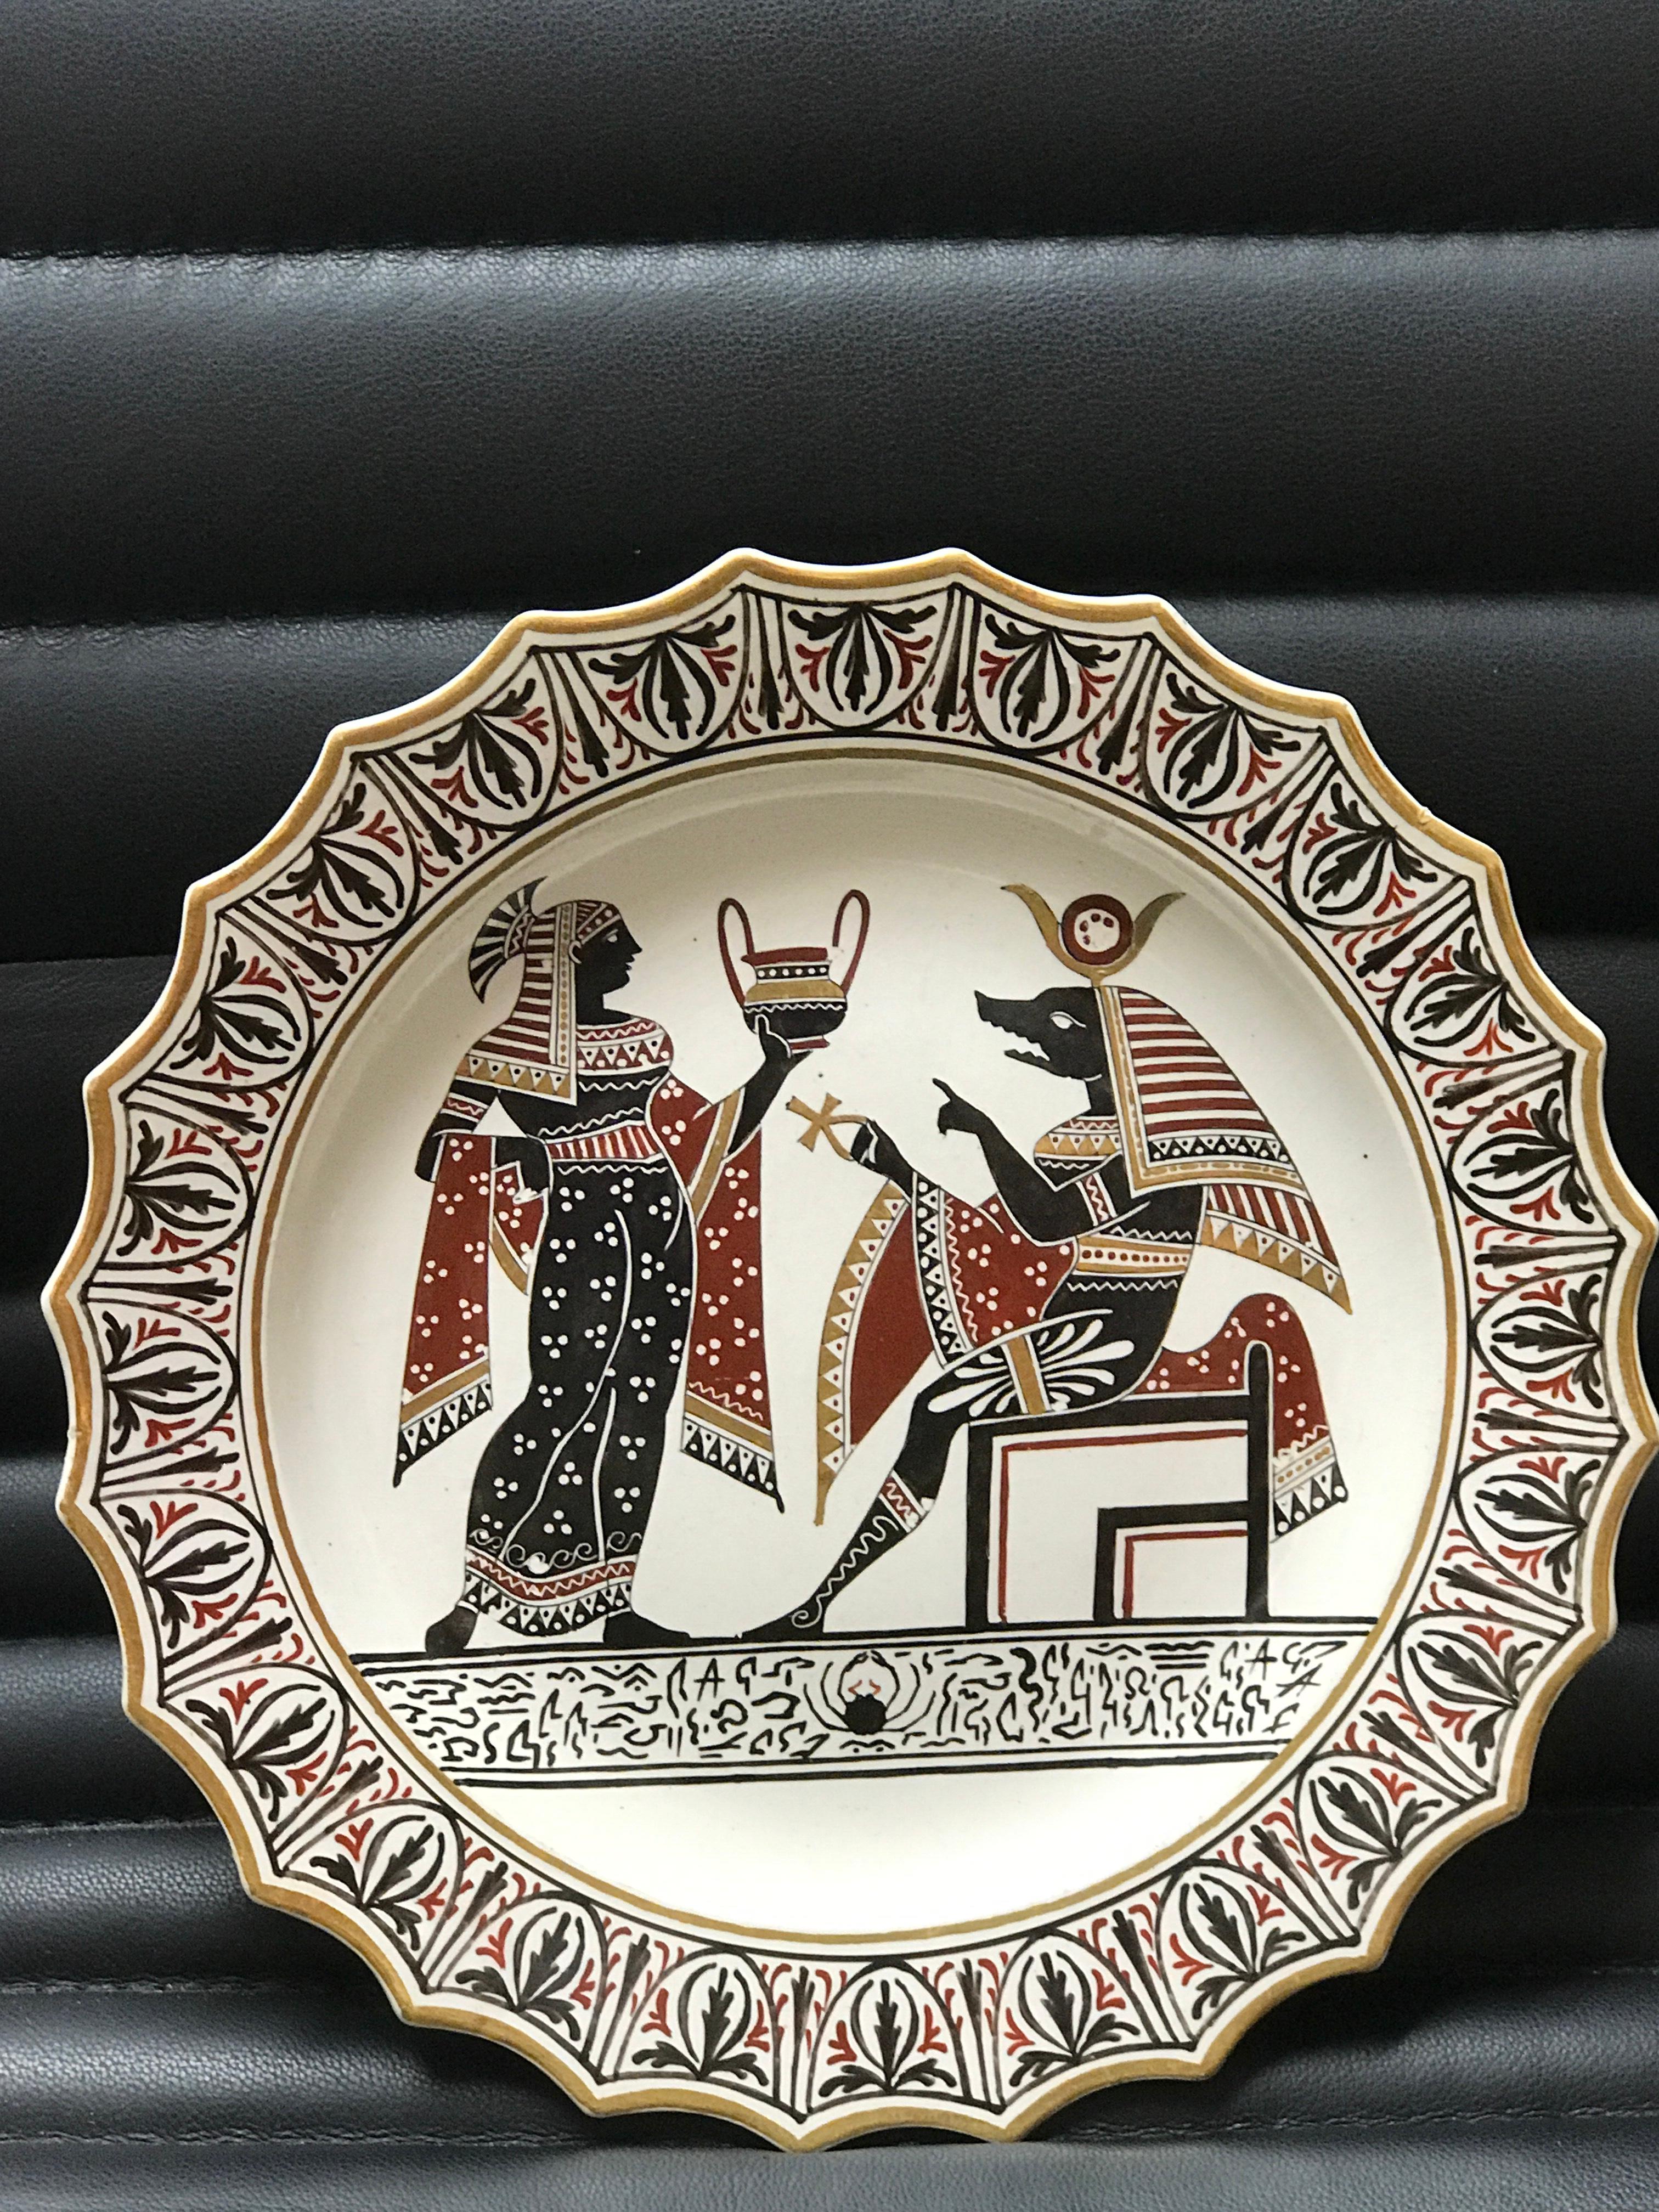 Giustiniani Egyptomania Keramikteller mit Anubis und vergoldeten Highlights
Neapolitanische Manufaktur (Biagio Giustiniani & Sons), datiert auf 1830-1840, eingeprägte Schrift Giustiniani und andere Zeichen.
 